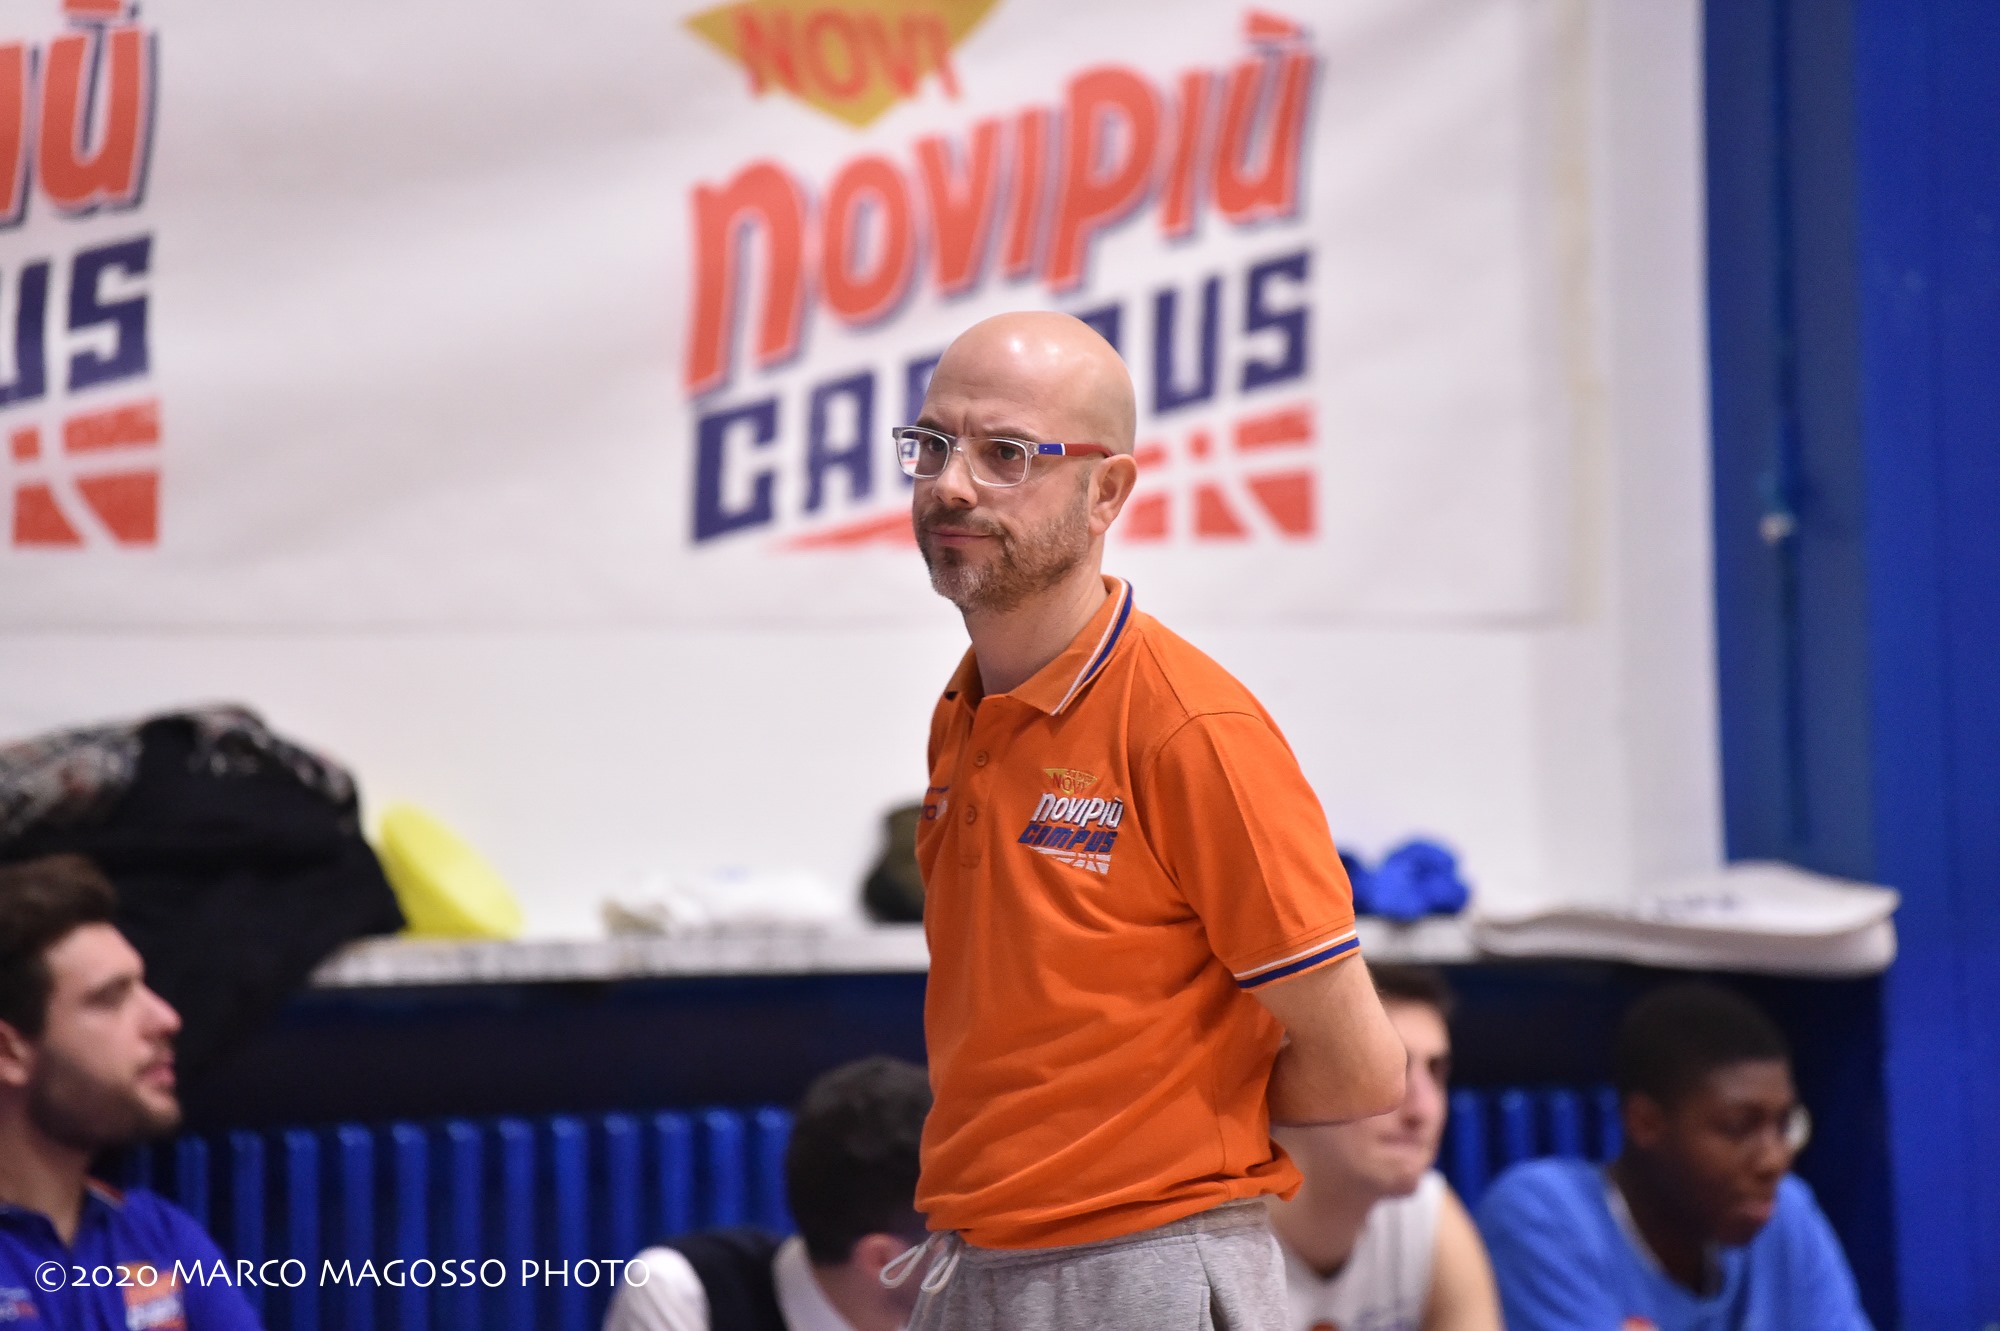 L'ultimo mercoledì da Leoni: Collegno Basket in Serie B - Luna Nuova